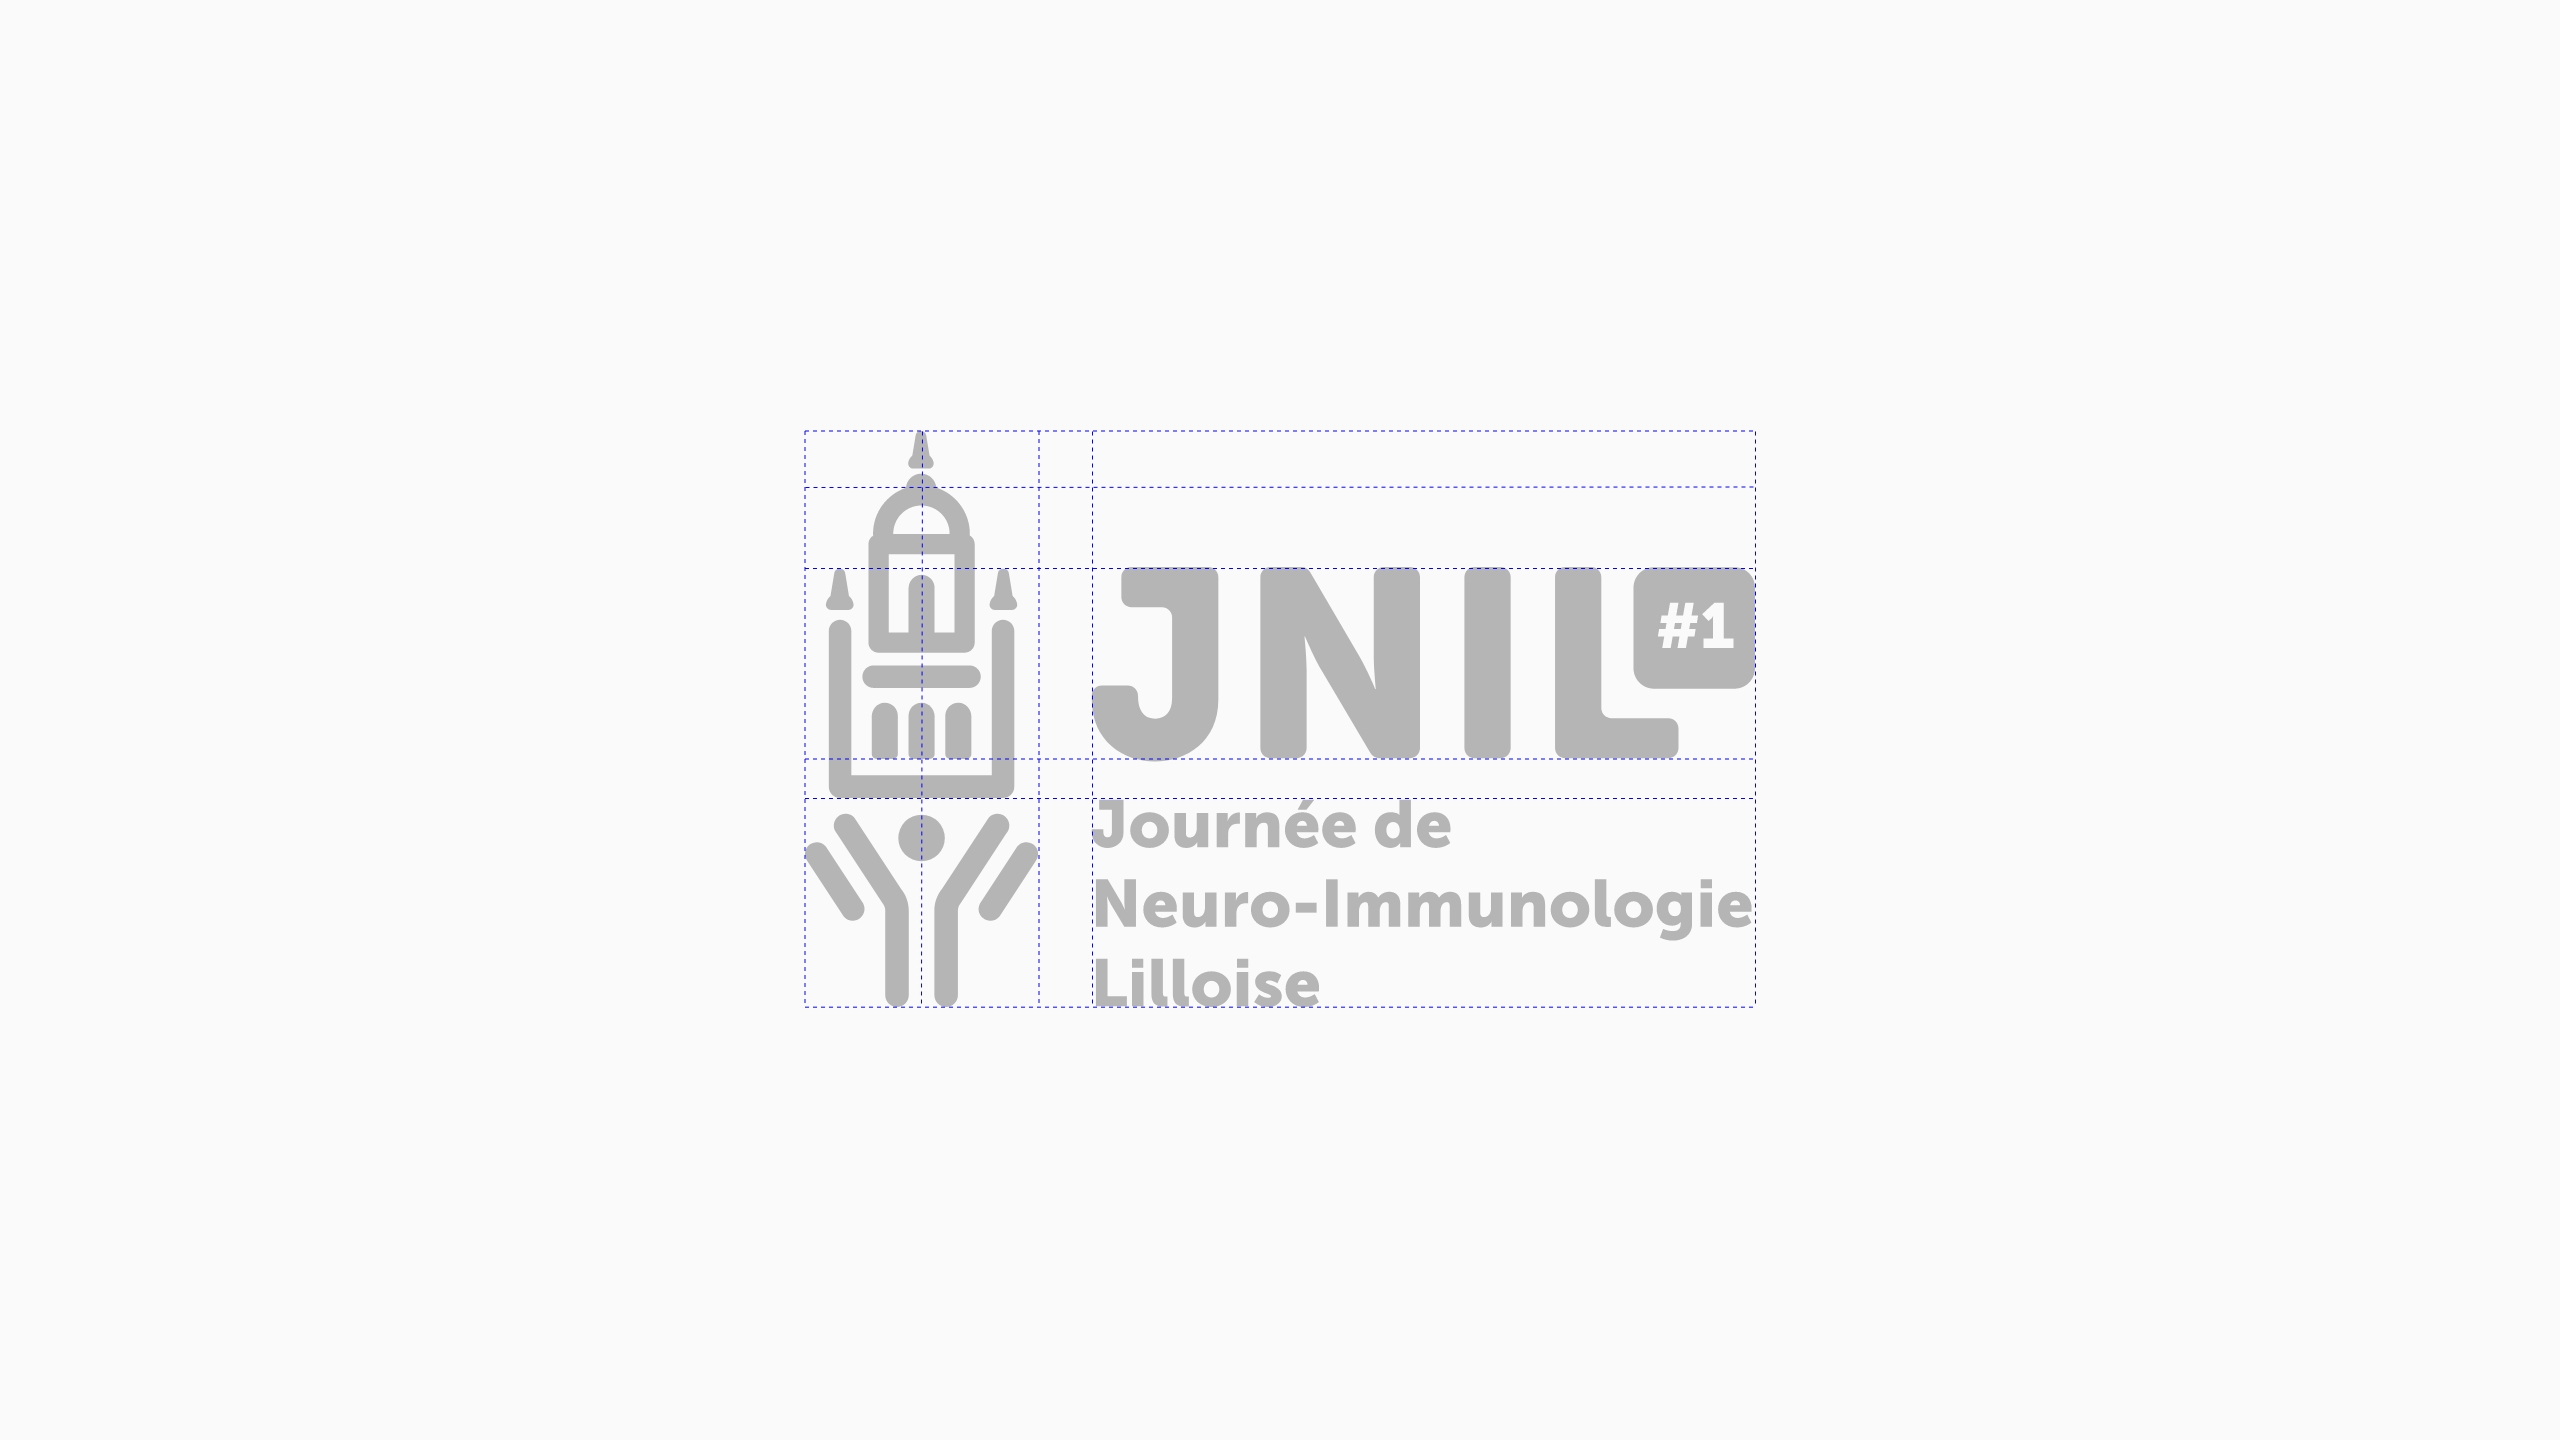 Journée de Neuro-Immunologie Lilloise logo structure